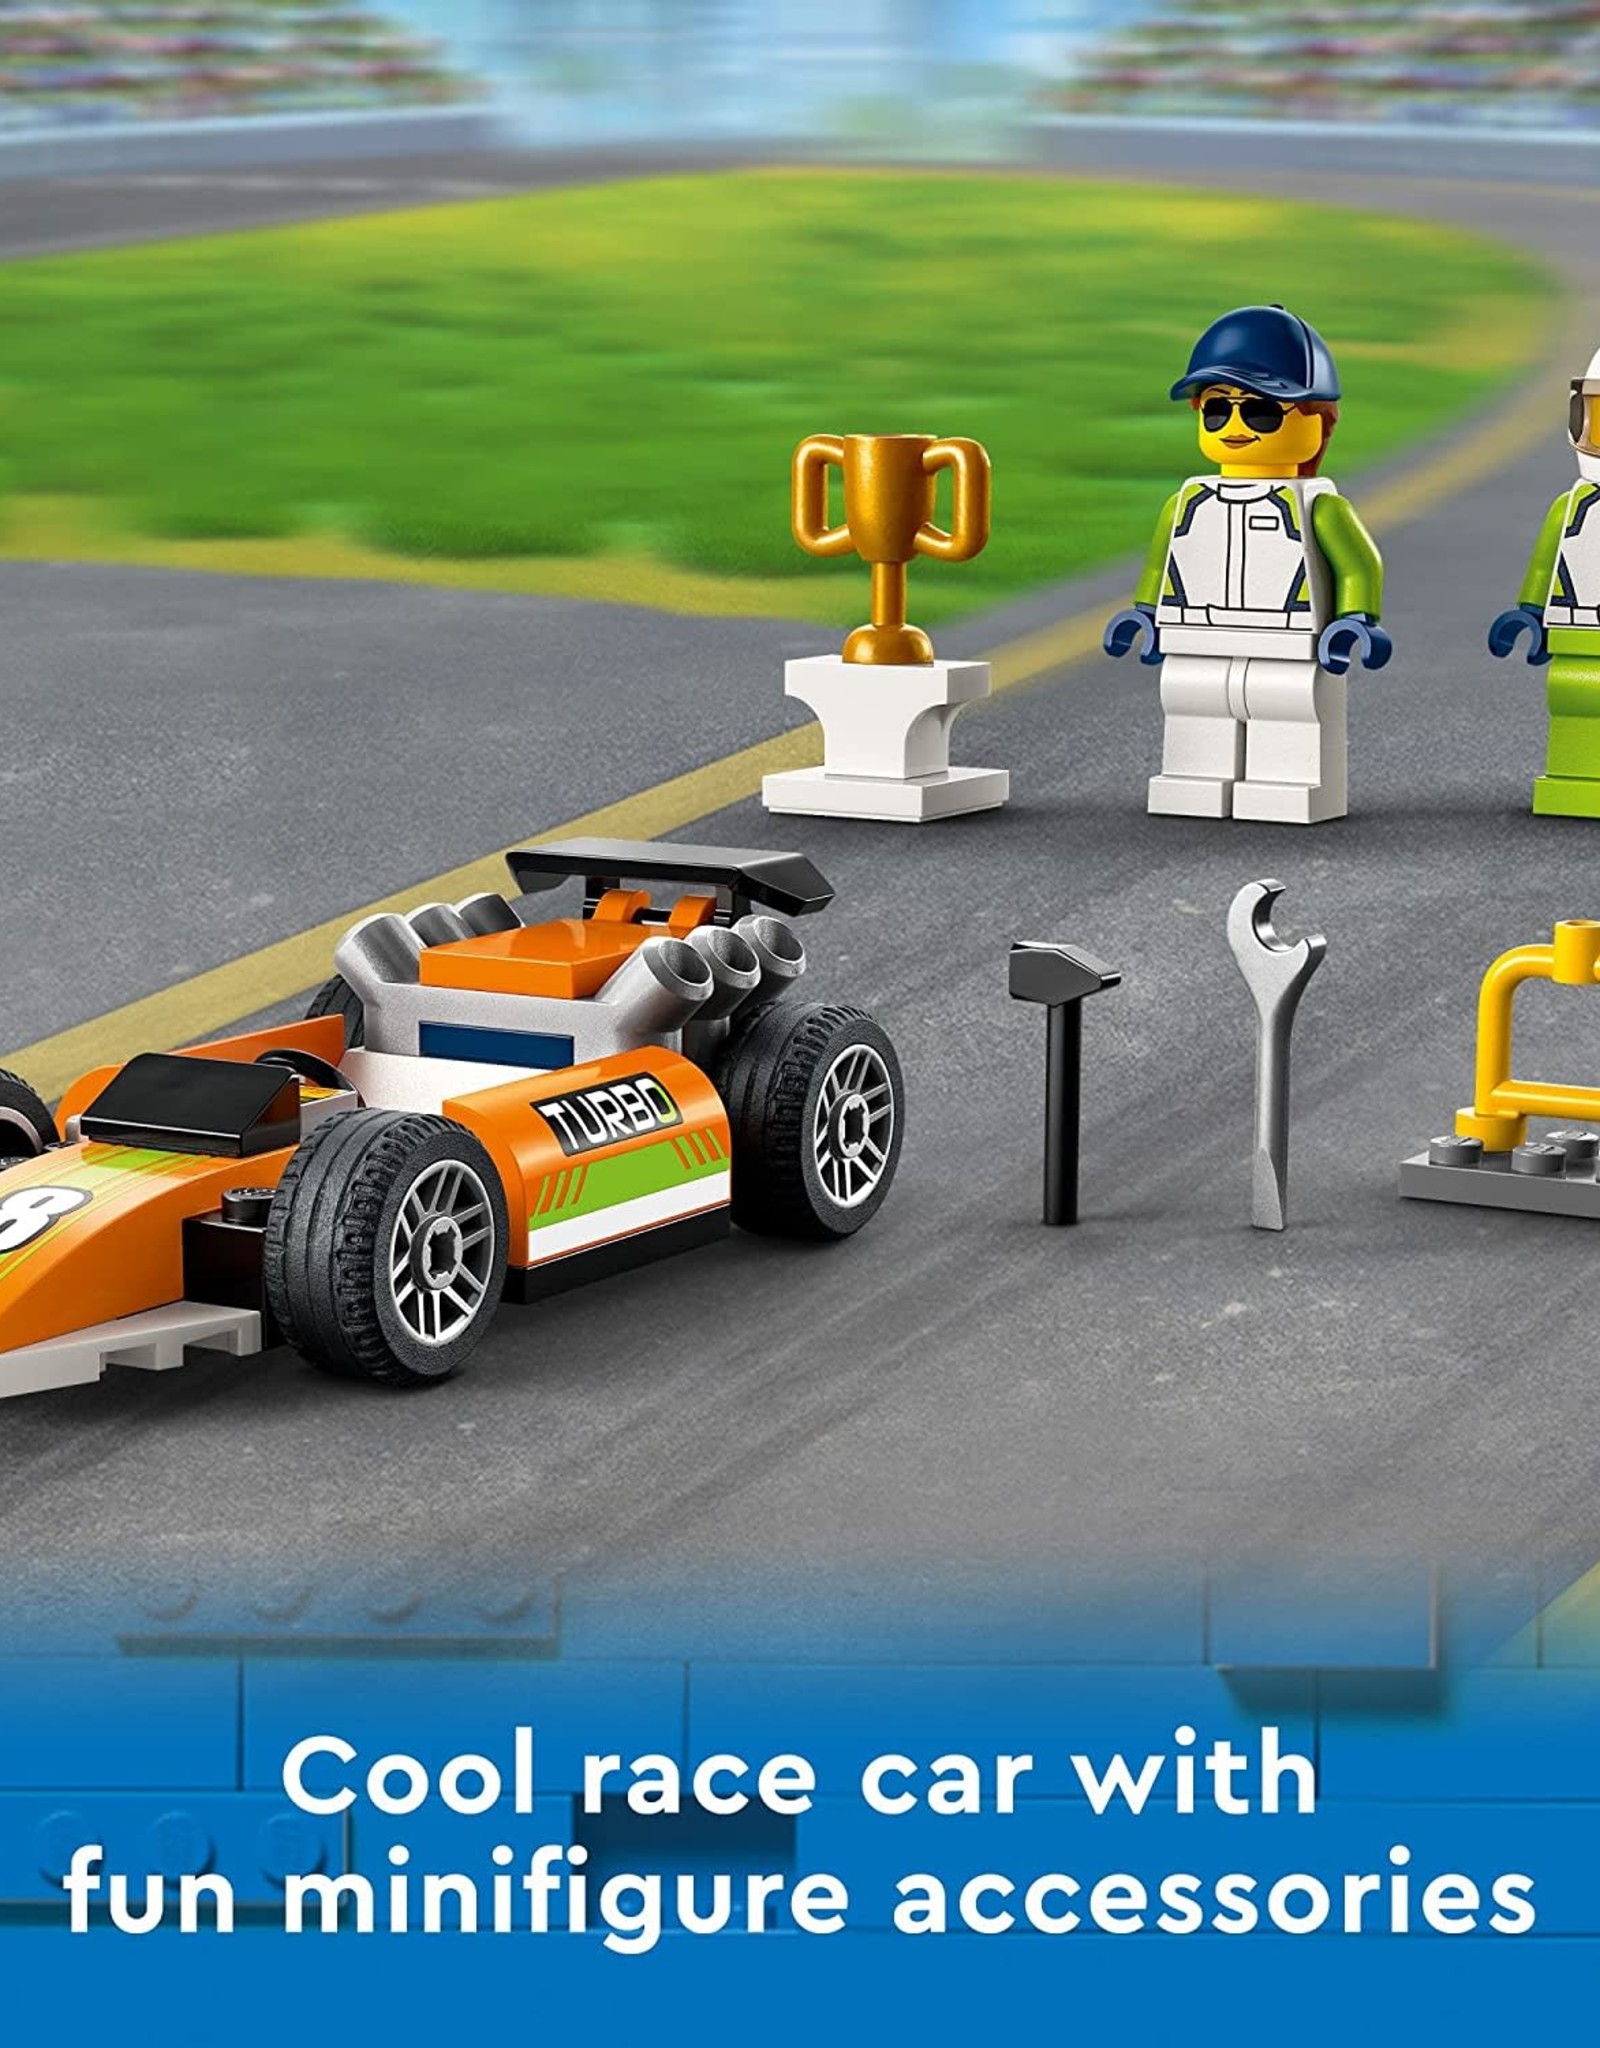 LEGO Lego City Race Car